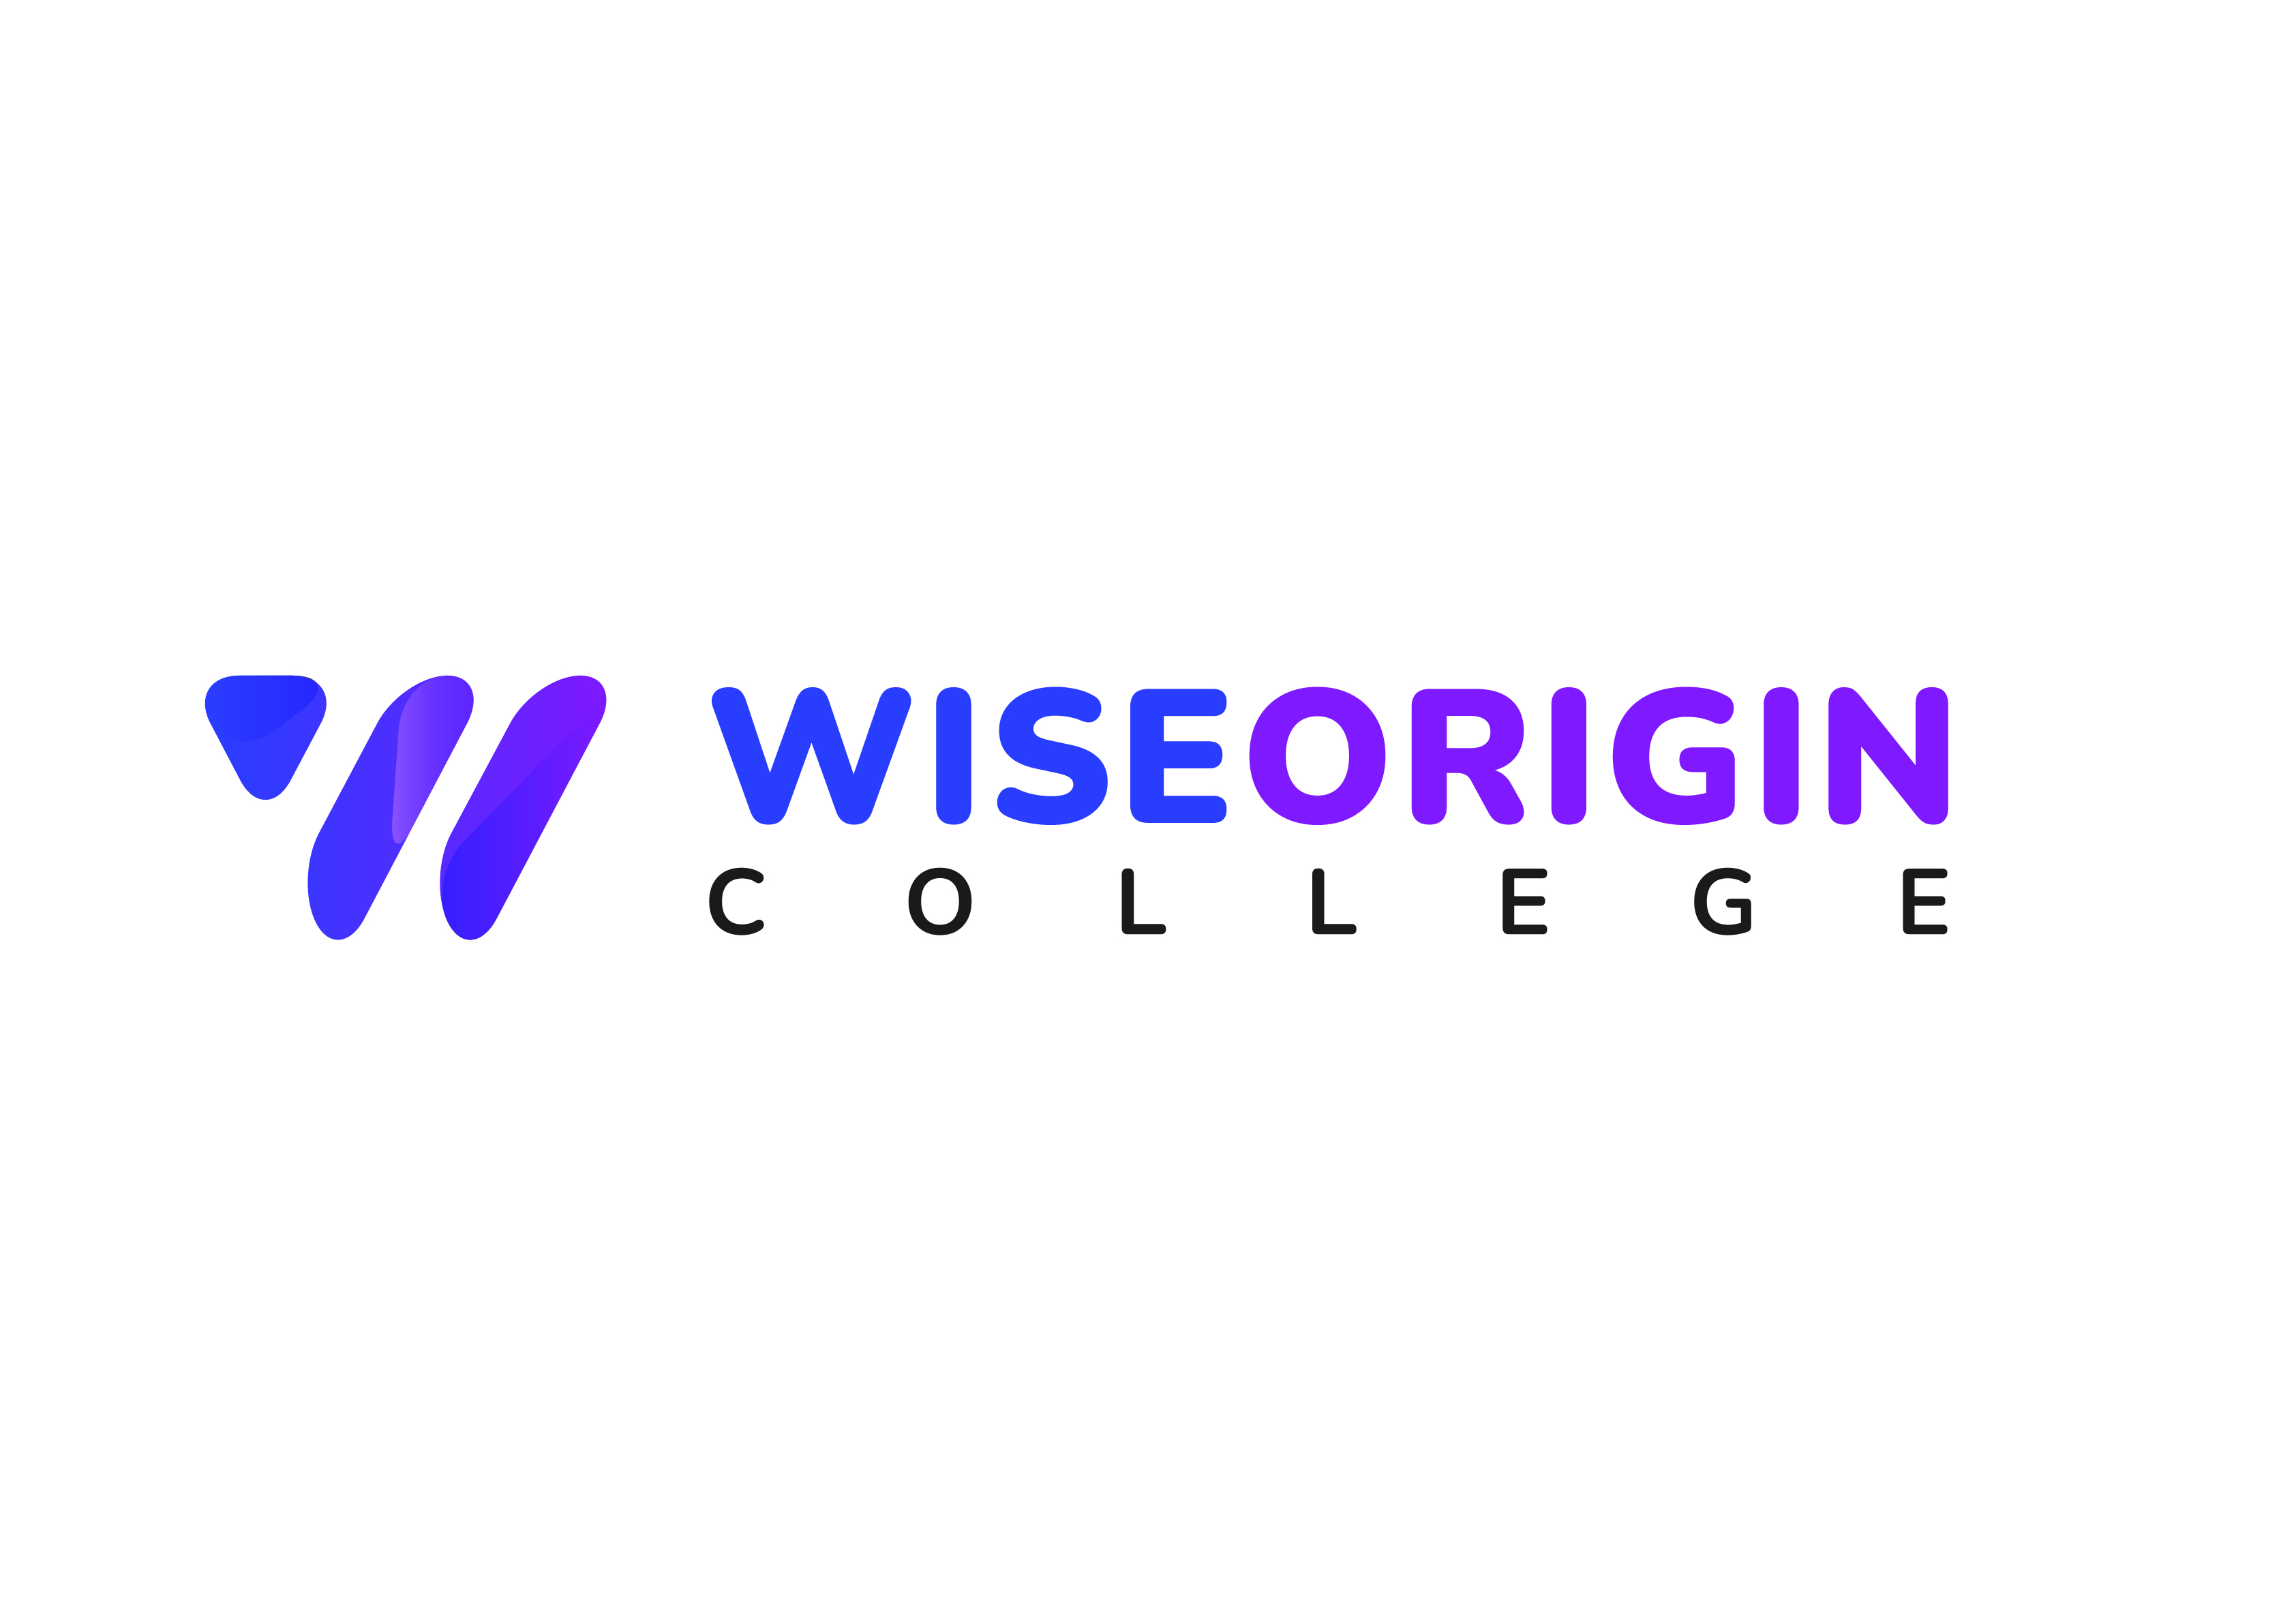 Colleges & Training Providers: Wise Origin College